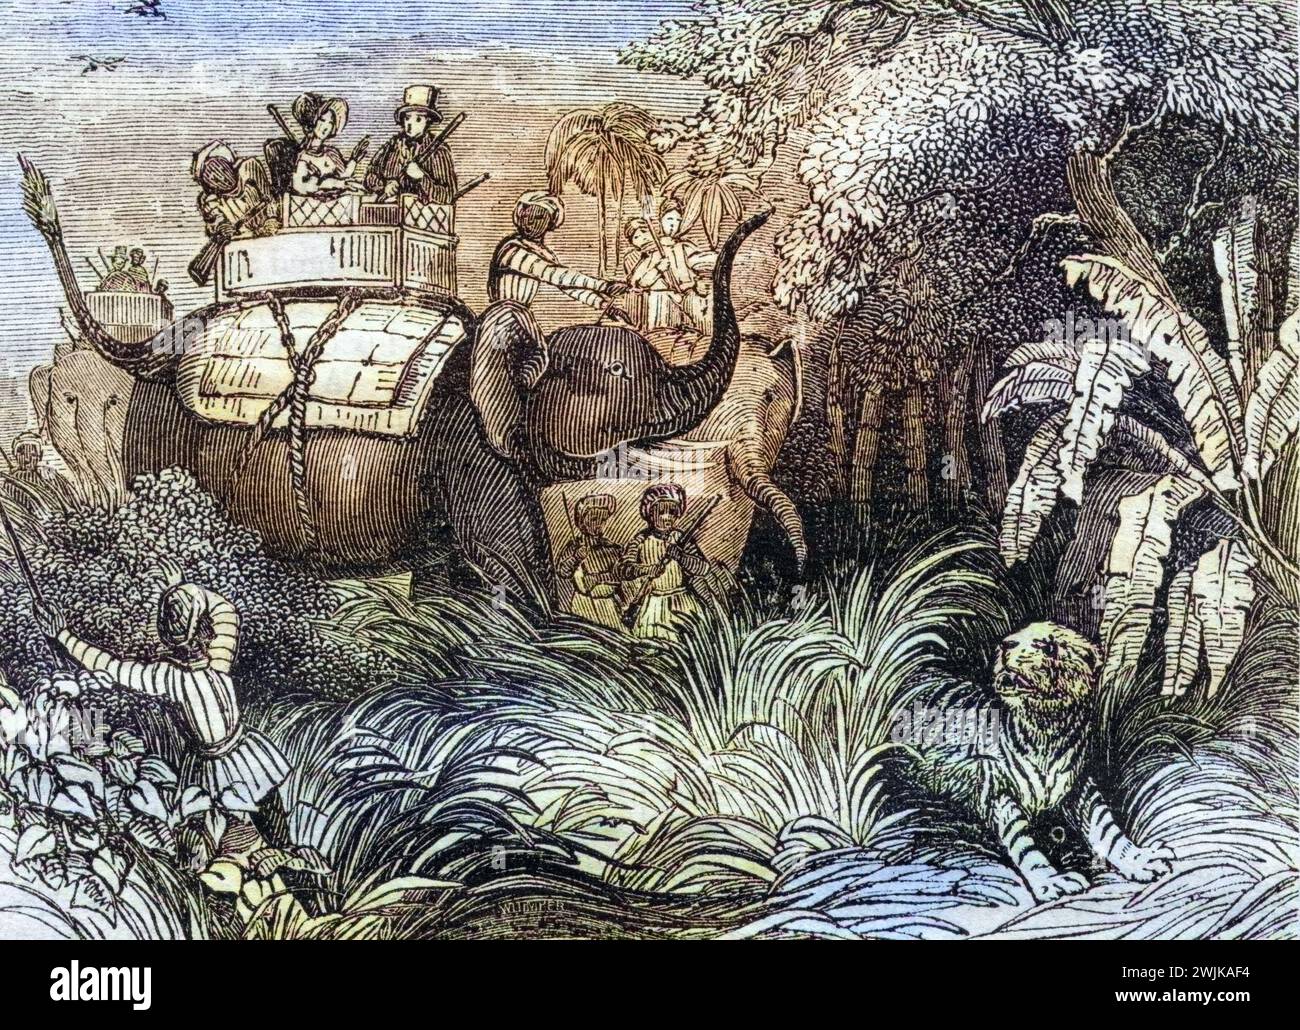 Jagd auf Tiger in Indien, 1860, Historisch, digital restaurierte Reproduktion von einer Vorlage aus dem 19. Jahrhundert, Record date not stated Stock Photo